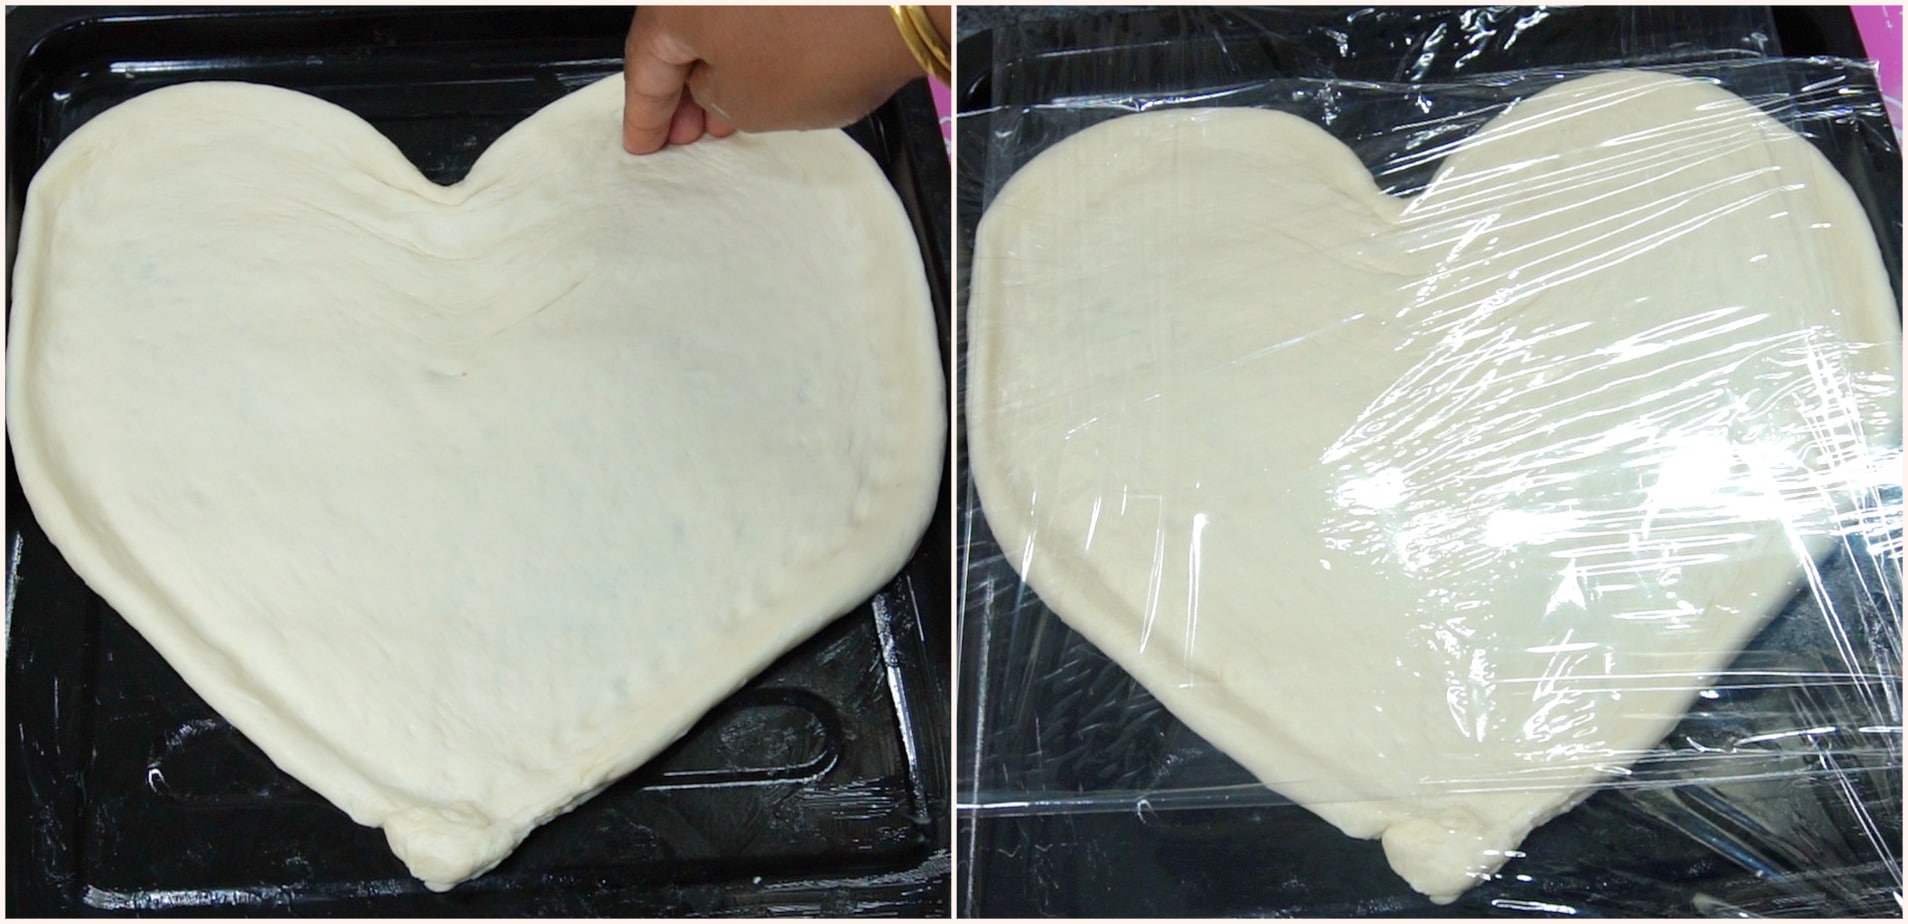 Heart Shaped Pizza